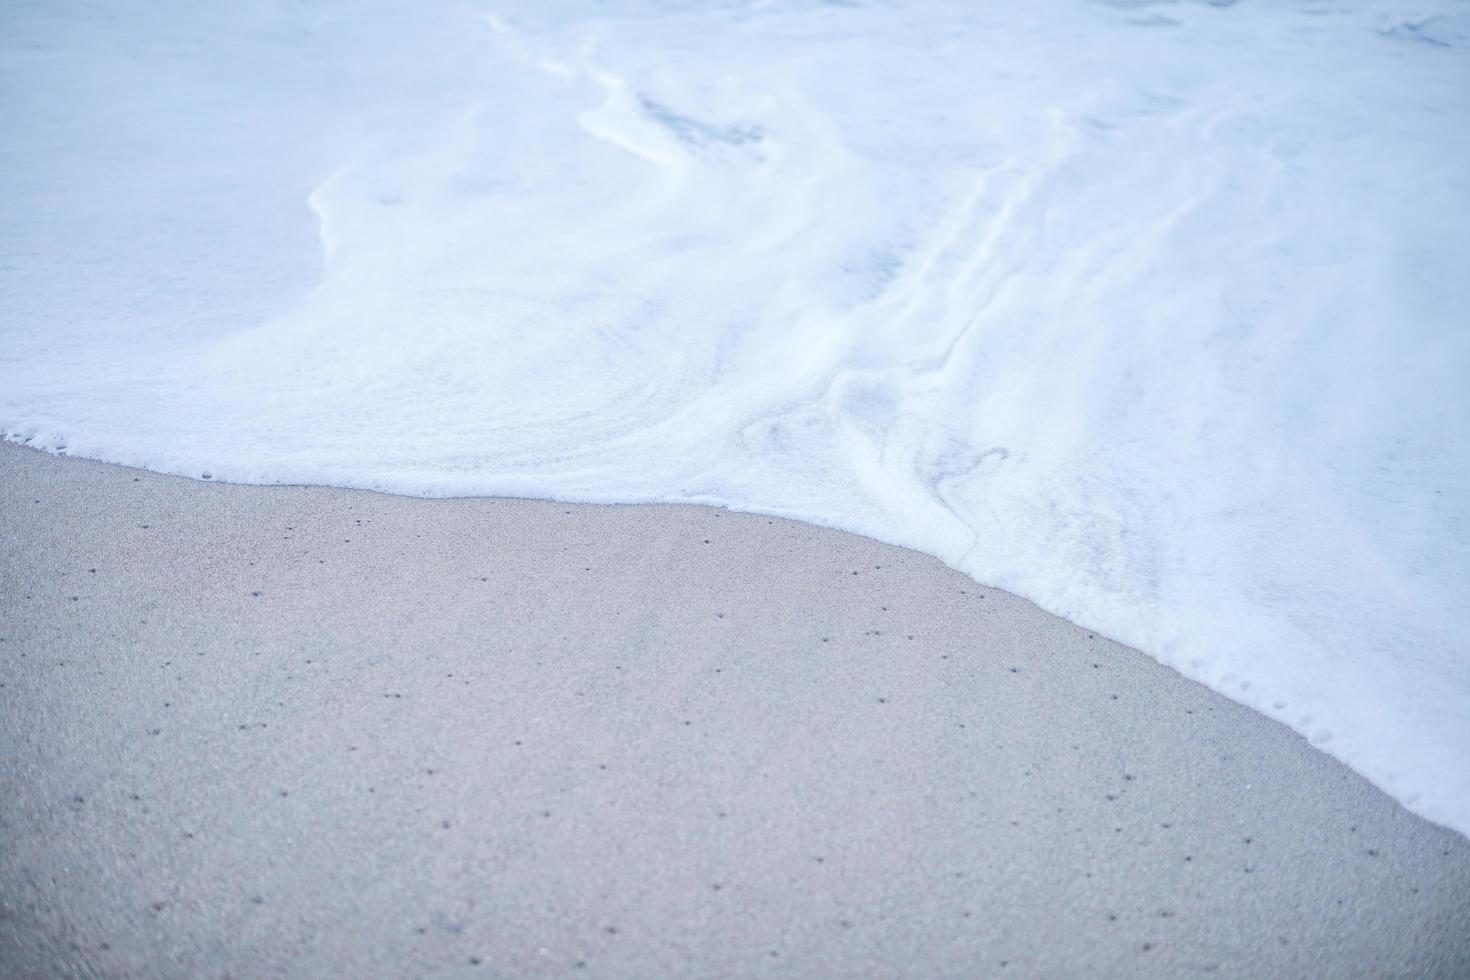 de schuimgolf op het zandstrand. zachte golven in de kustlijn die rustig en plezierig aanvoelen om te ontspannen. foto